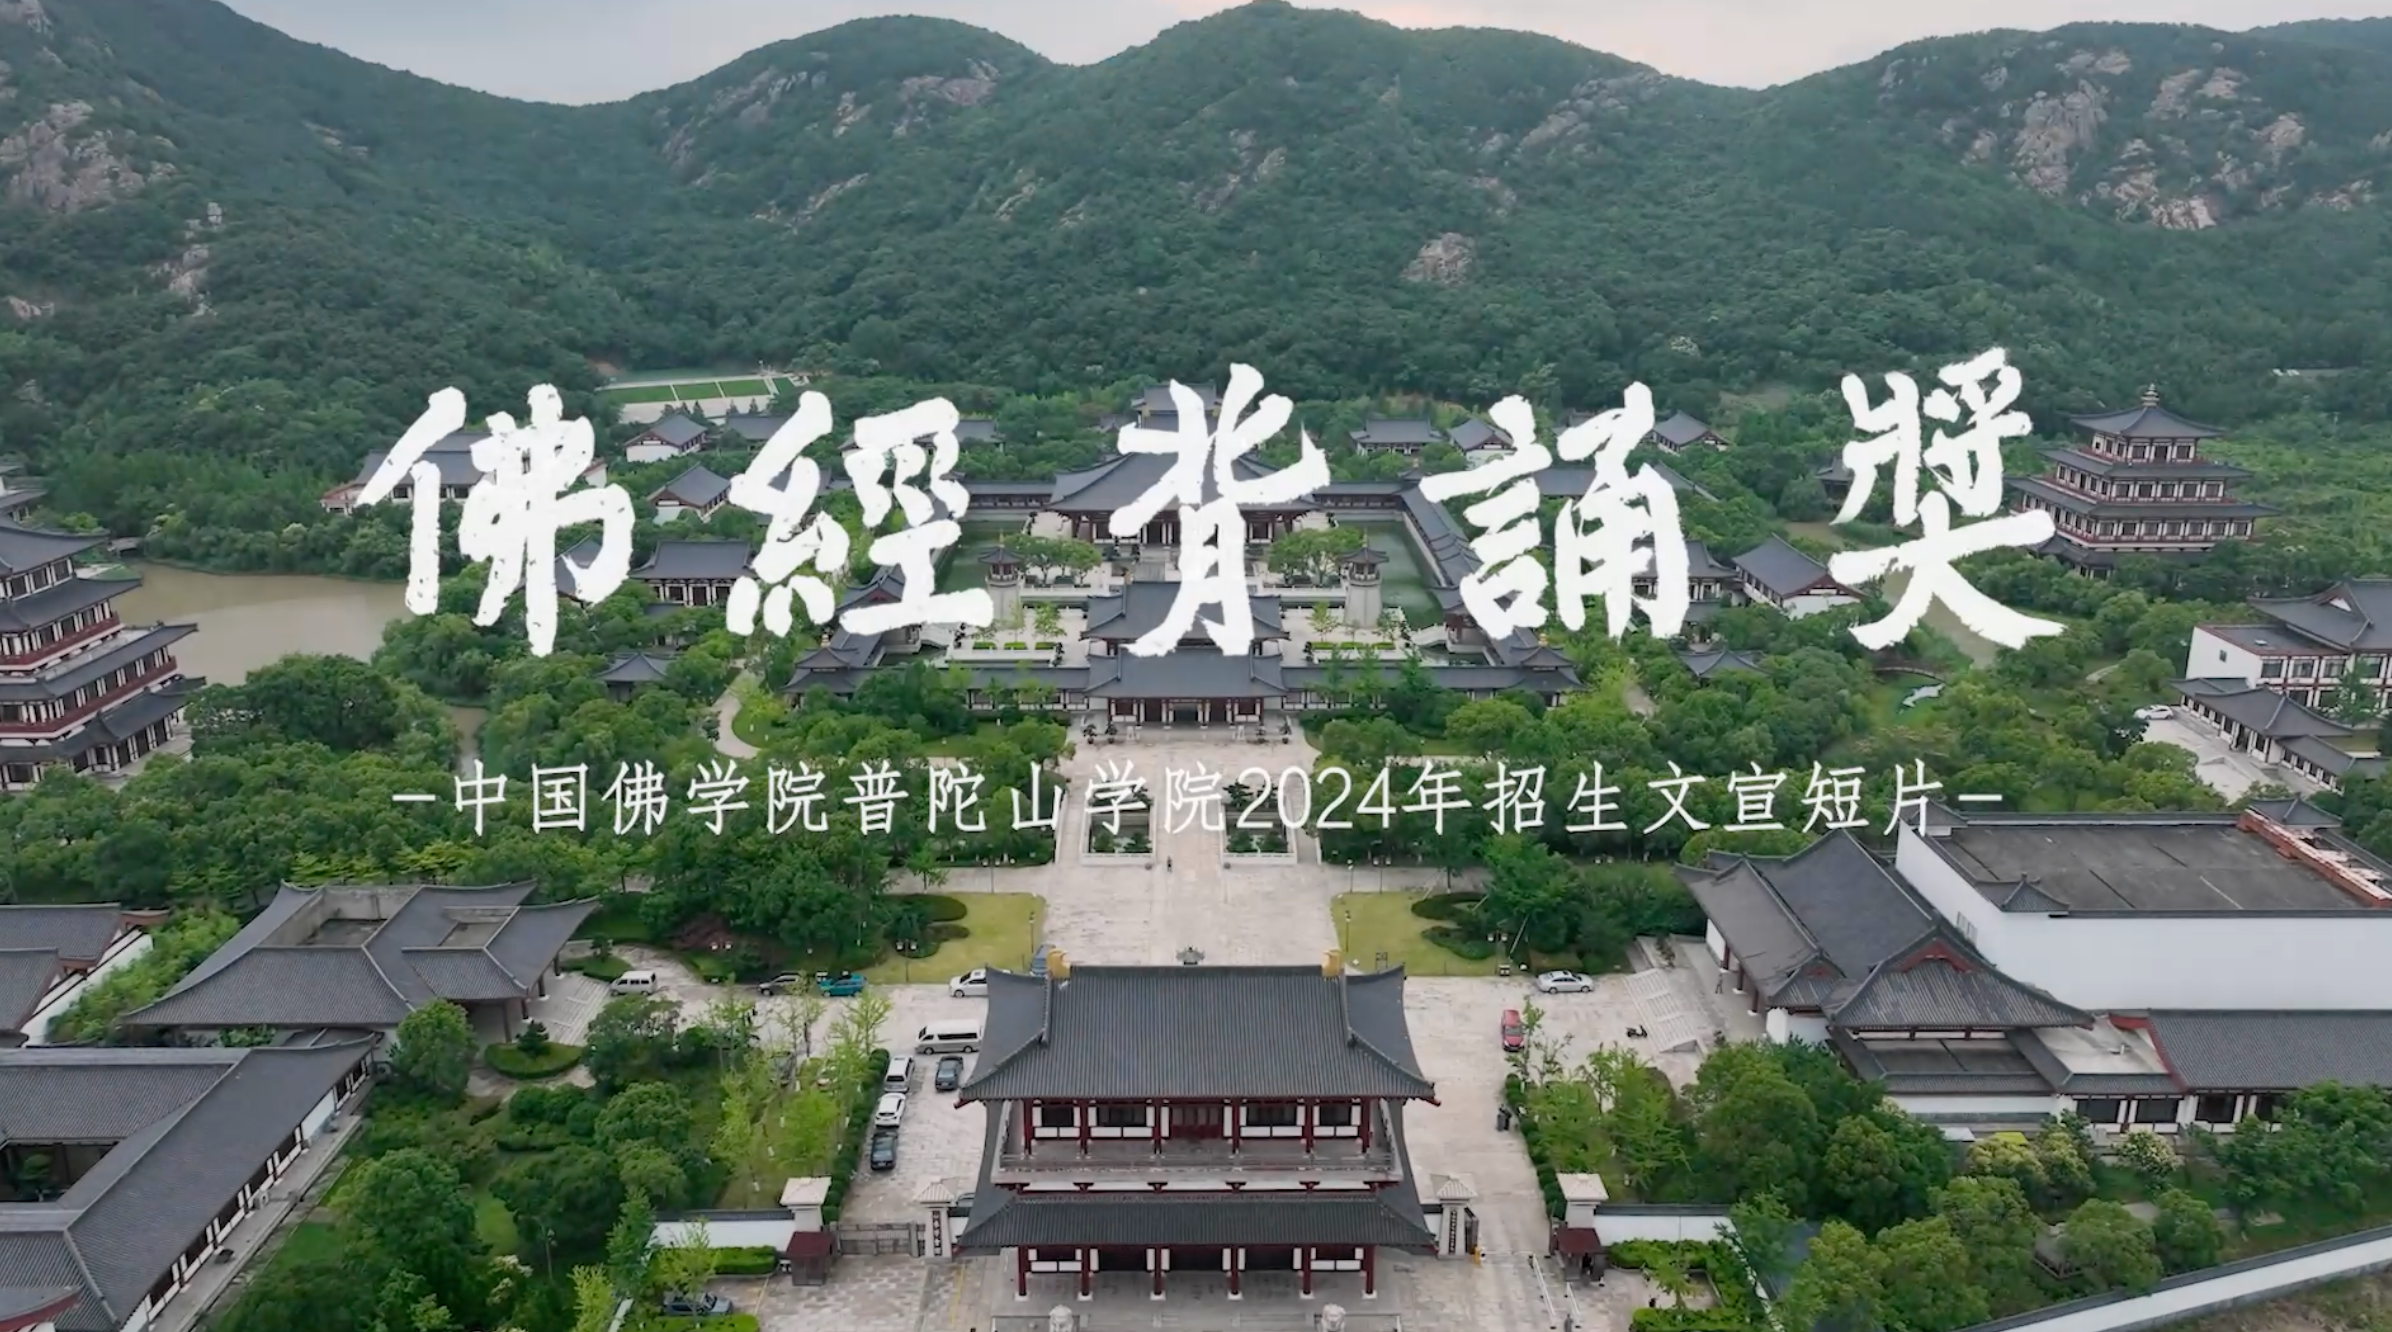  Putuoshan College of China Buddhist Academy in 2024